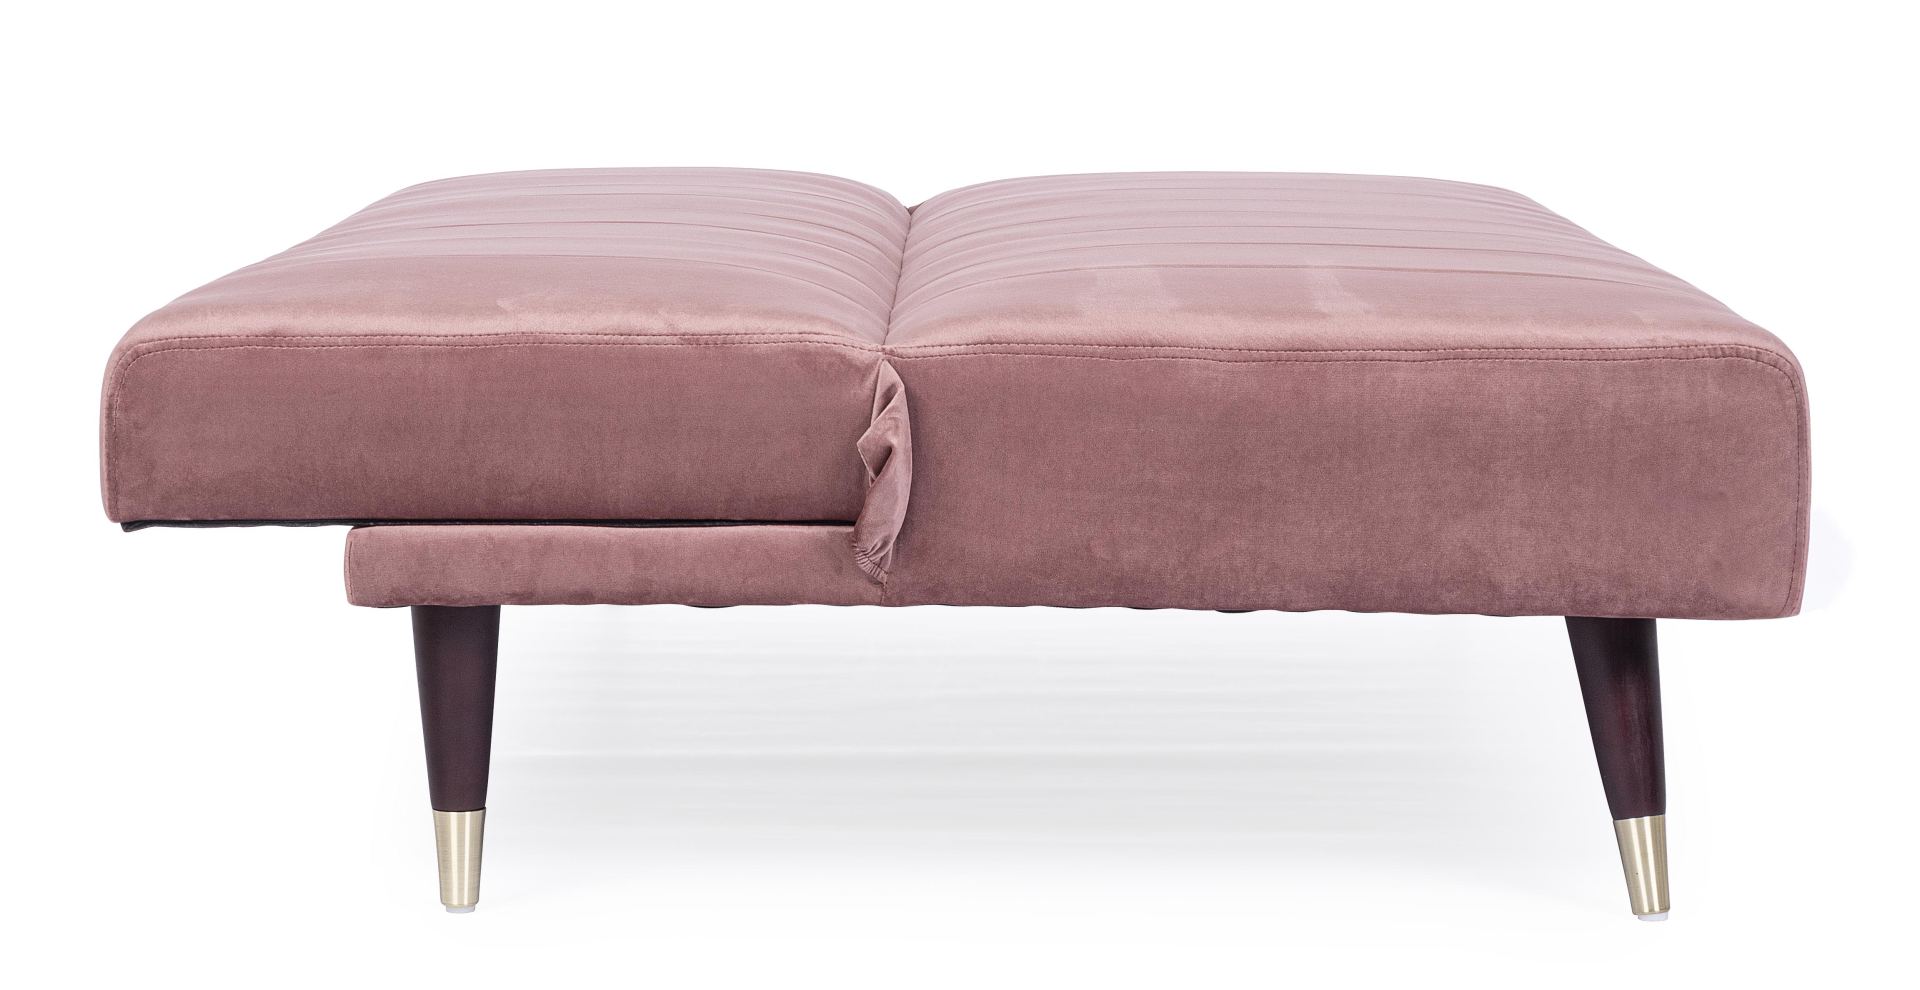 Das Schlafsofa Alma überzeugt mit seinem klassischen Design. Gefertigt wurde es aus Samt, welcher einen rosa Farbton besitzt. Das Gestell ist aus Metall und hat eine schwarzen Farbe. Die Schlaffunktion hat ein Maß von 180x105 cm. Das Sofa ist in der Ausfü